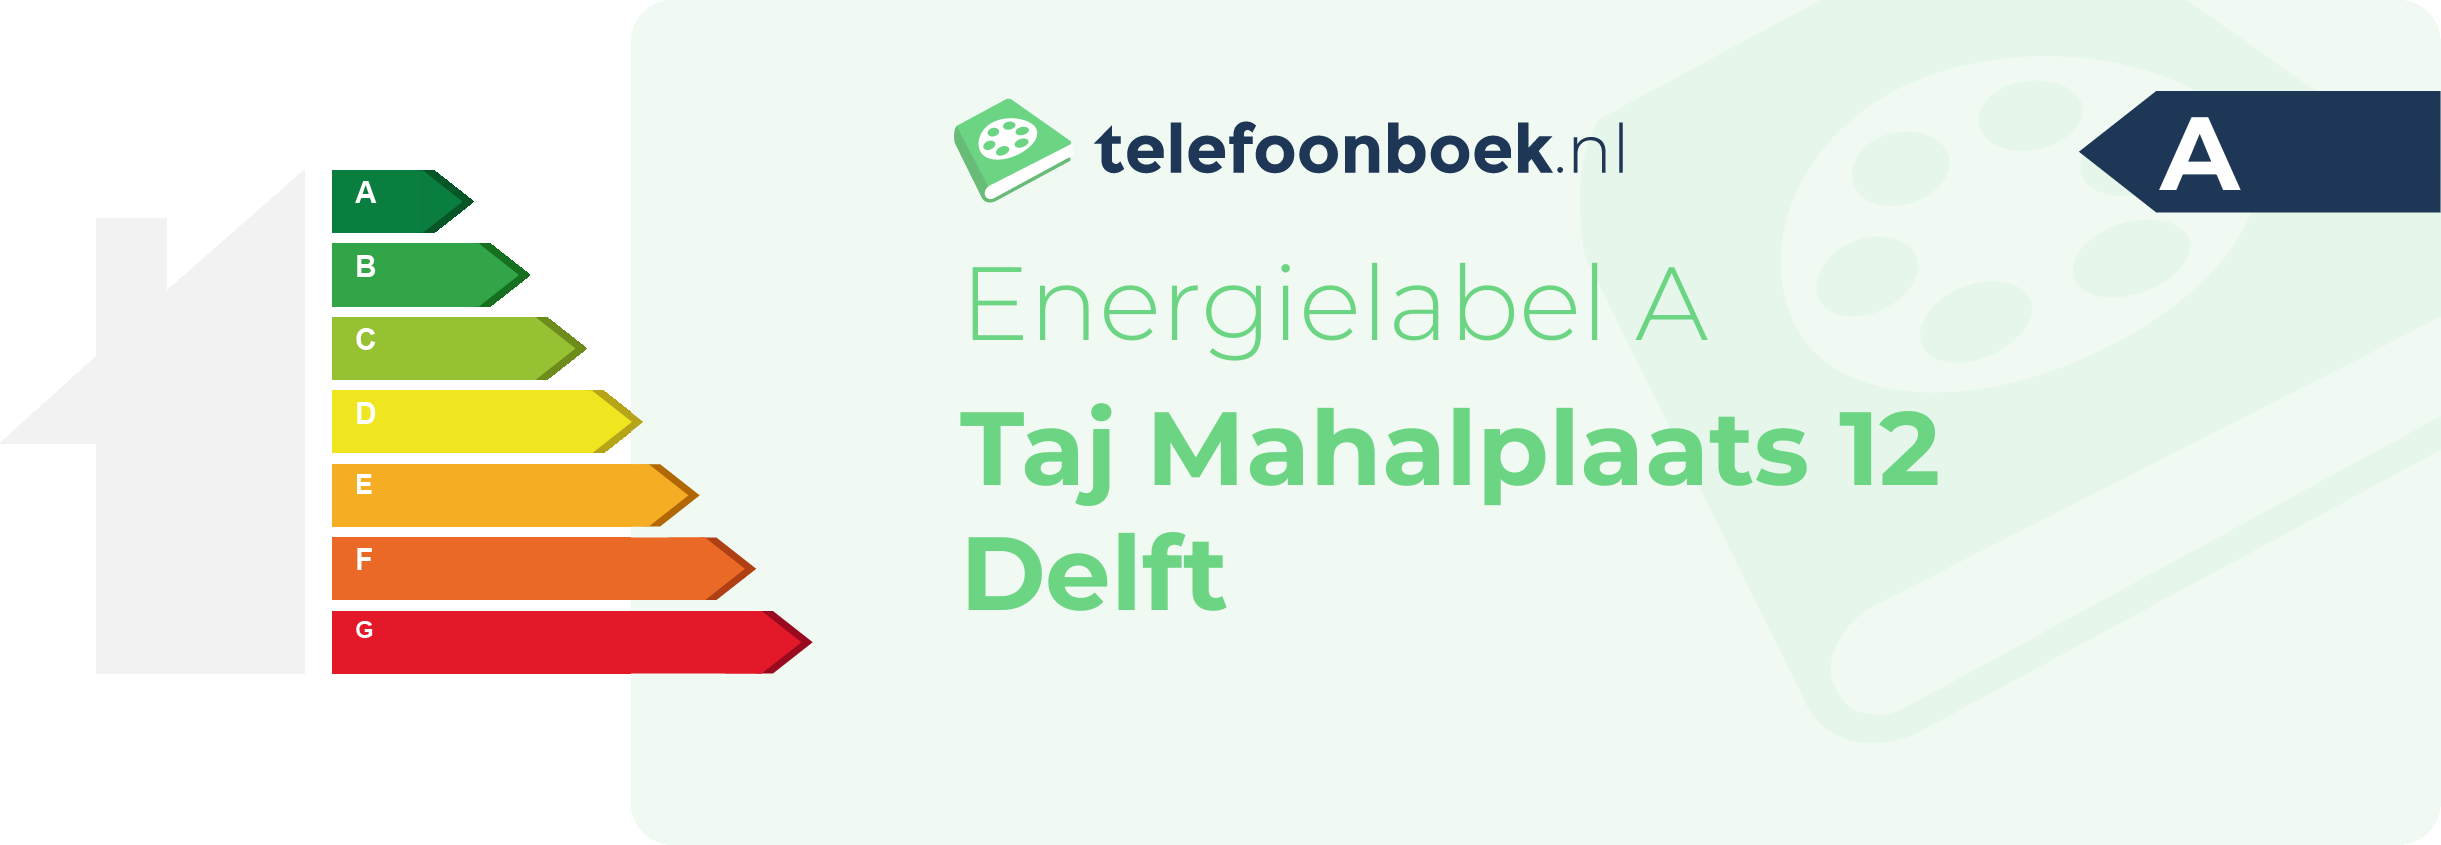 Energielabel Taj Mahalplaats 12 Delft